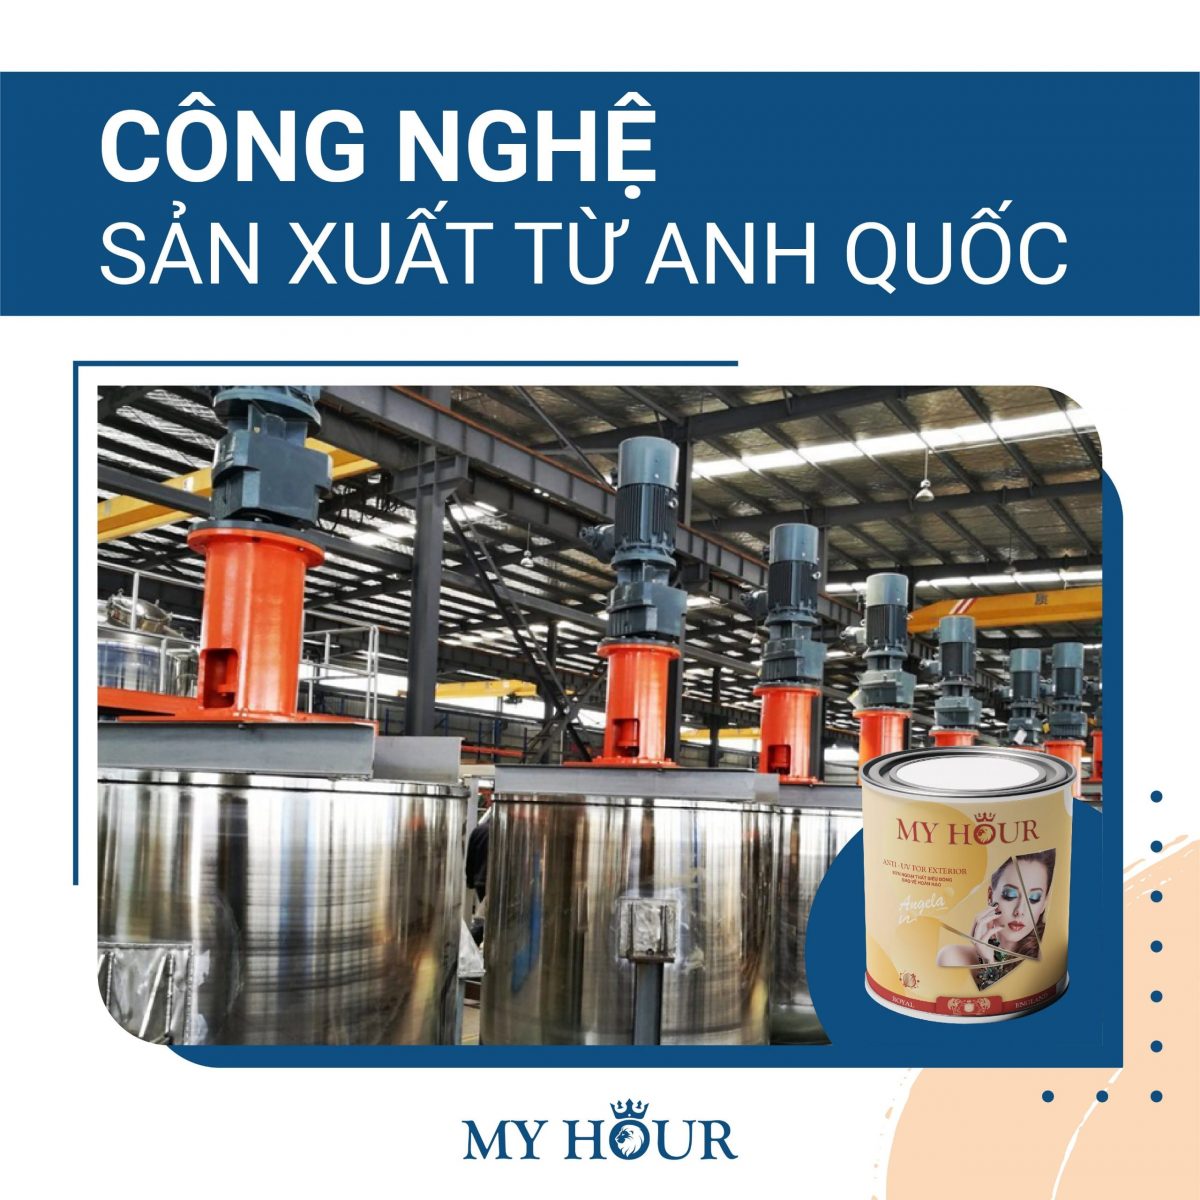 SƠN MY HOUR: THƯƠNG HIỆU ĐẲNG CẤP CHÂU ÂU: công nghệ sản xuất từ anh quốc